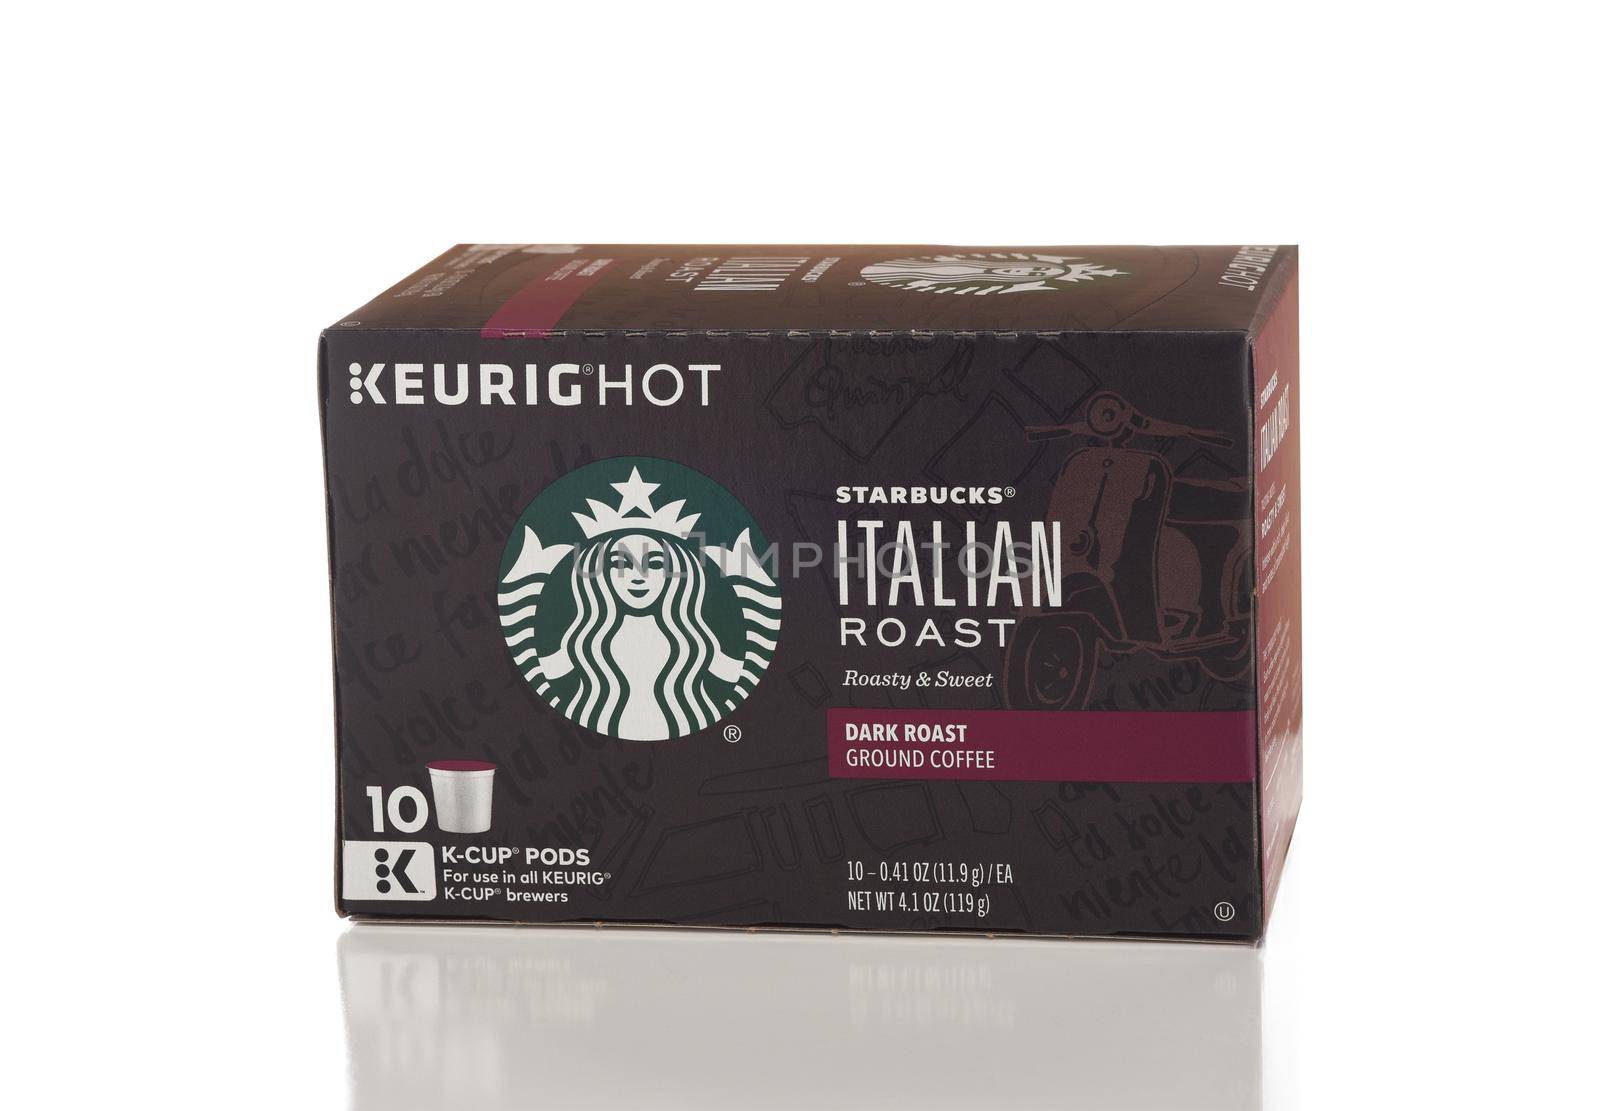 Keurig Starbucks Italian Roast Coffee Pods.  by sCukrov